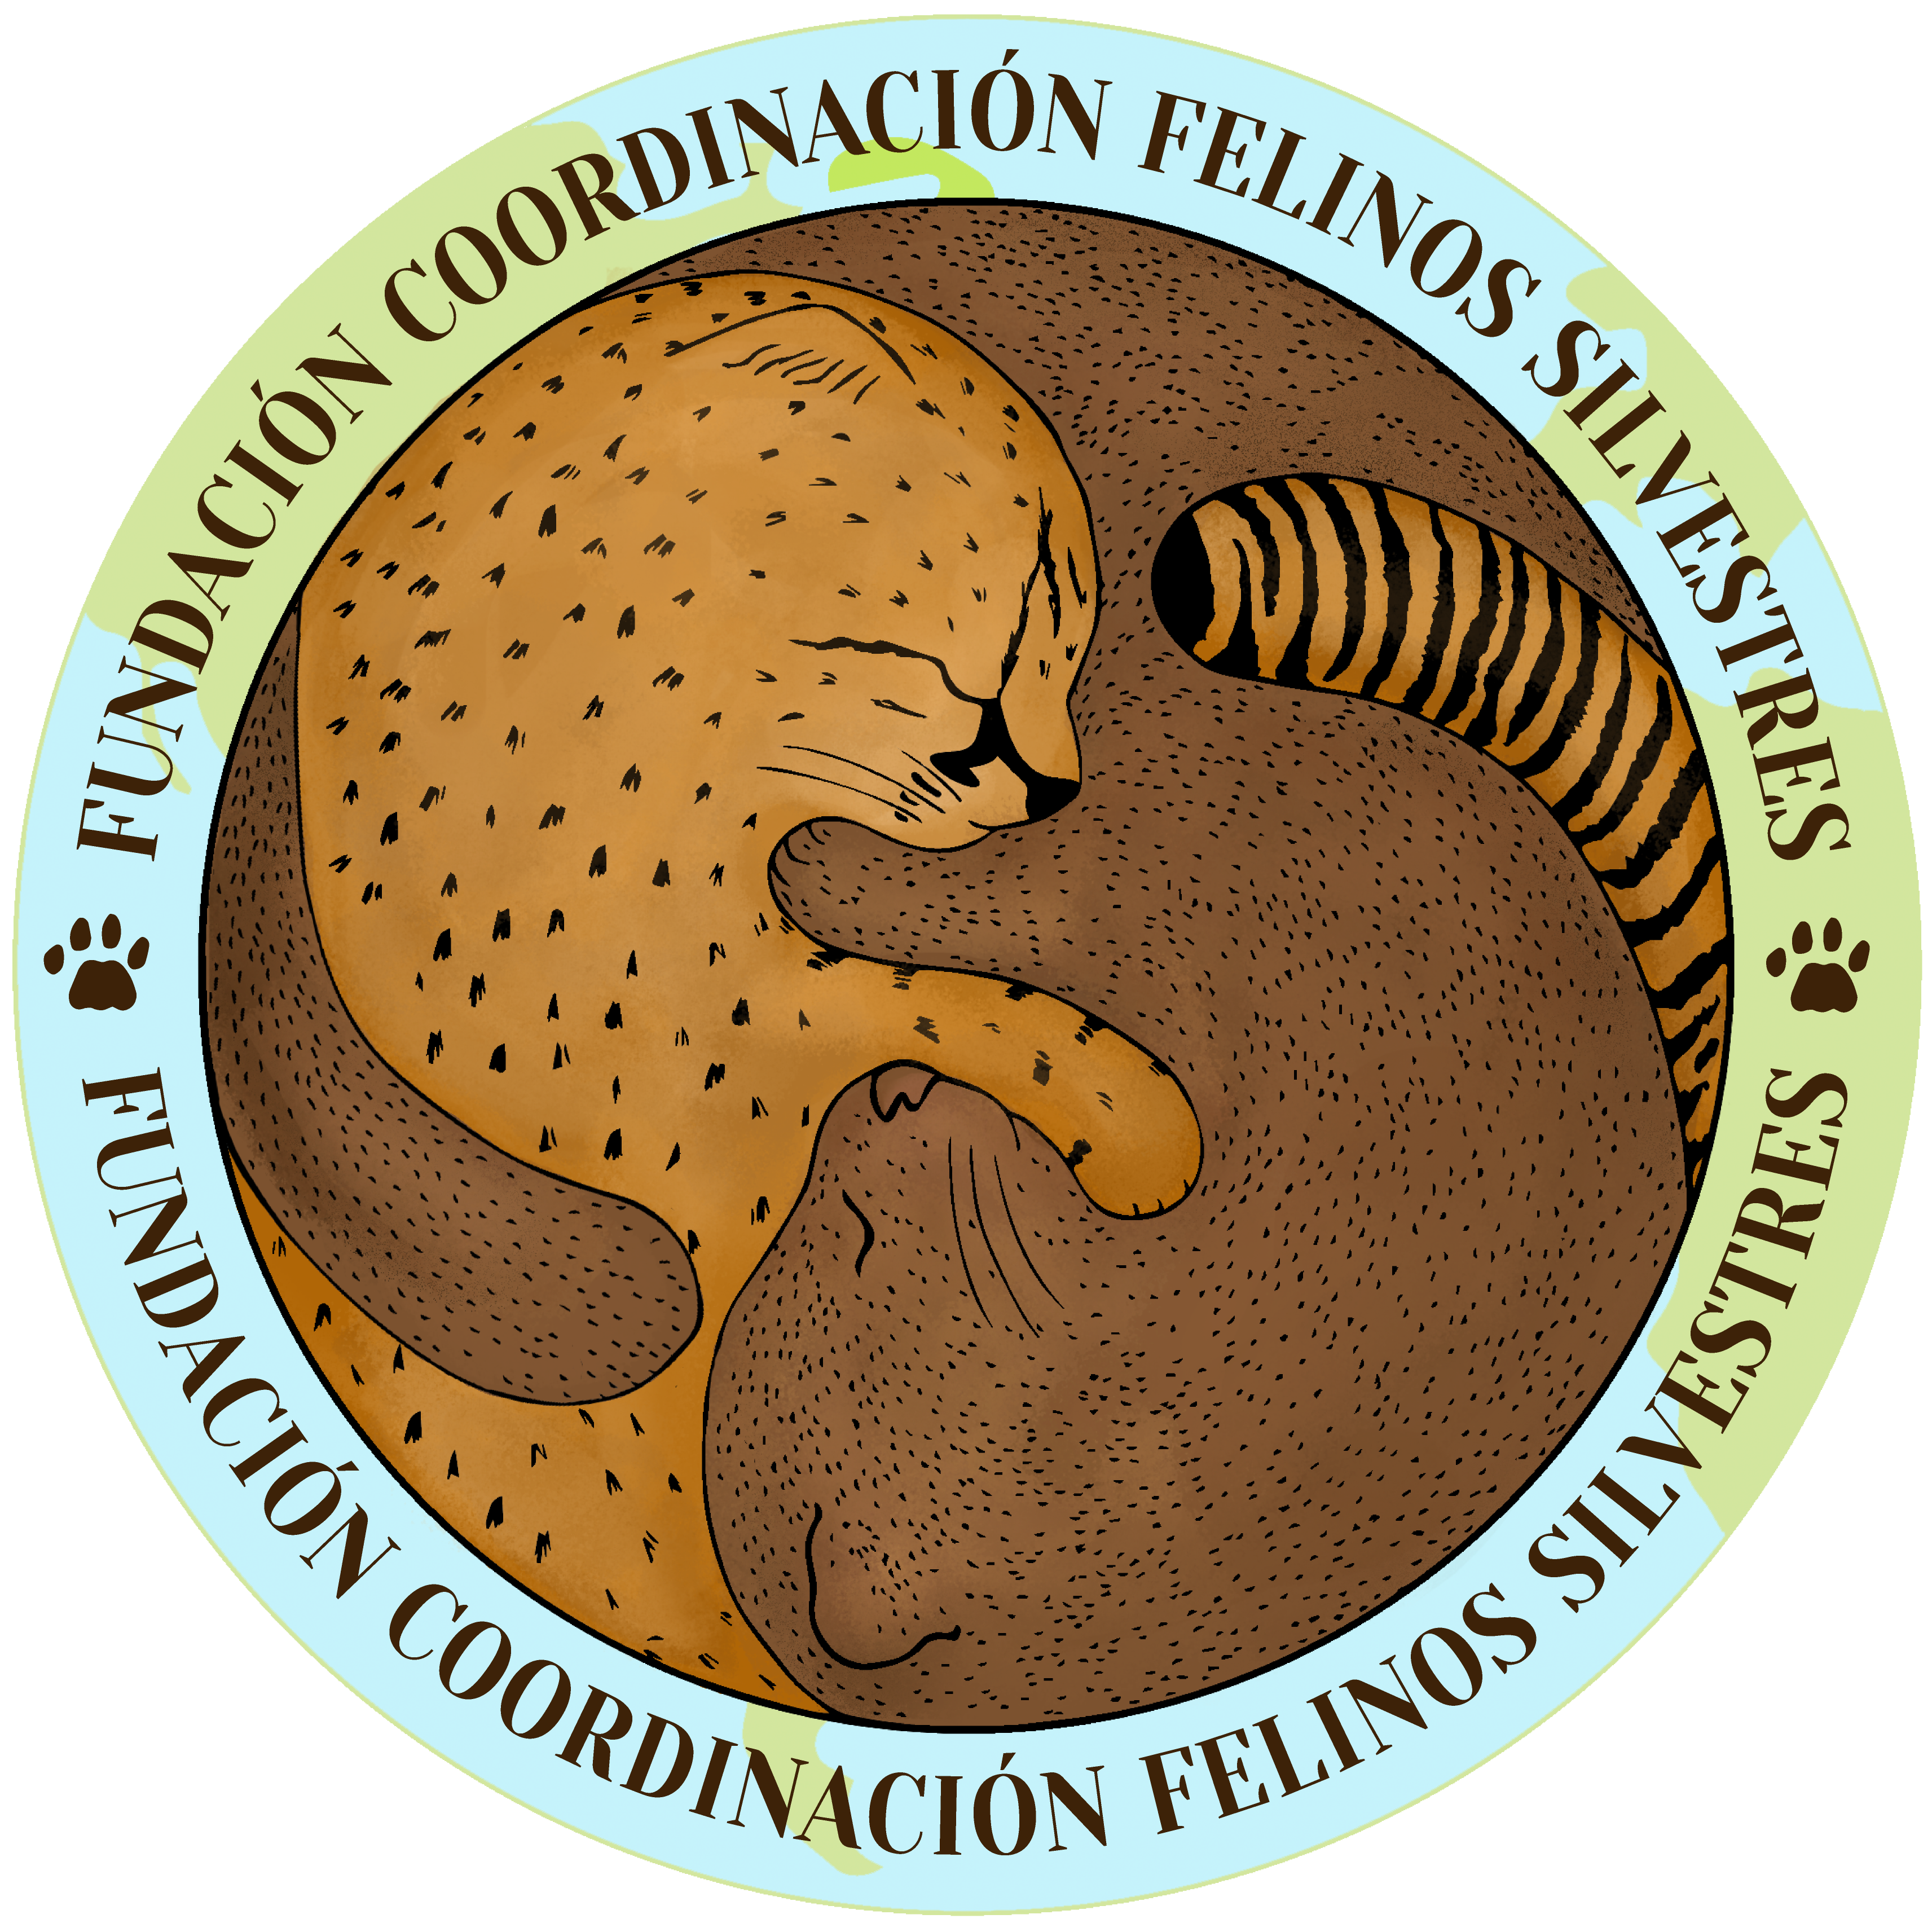 Fundación Coordinación Felinos Silvestres